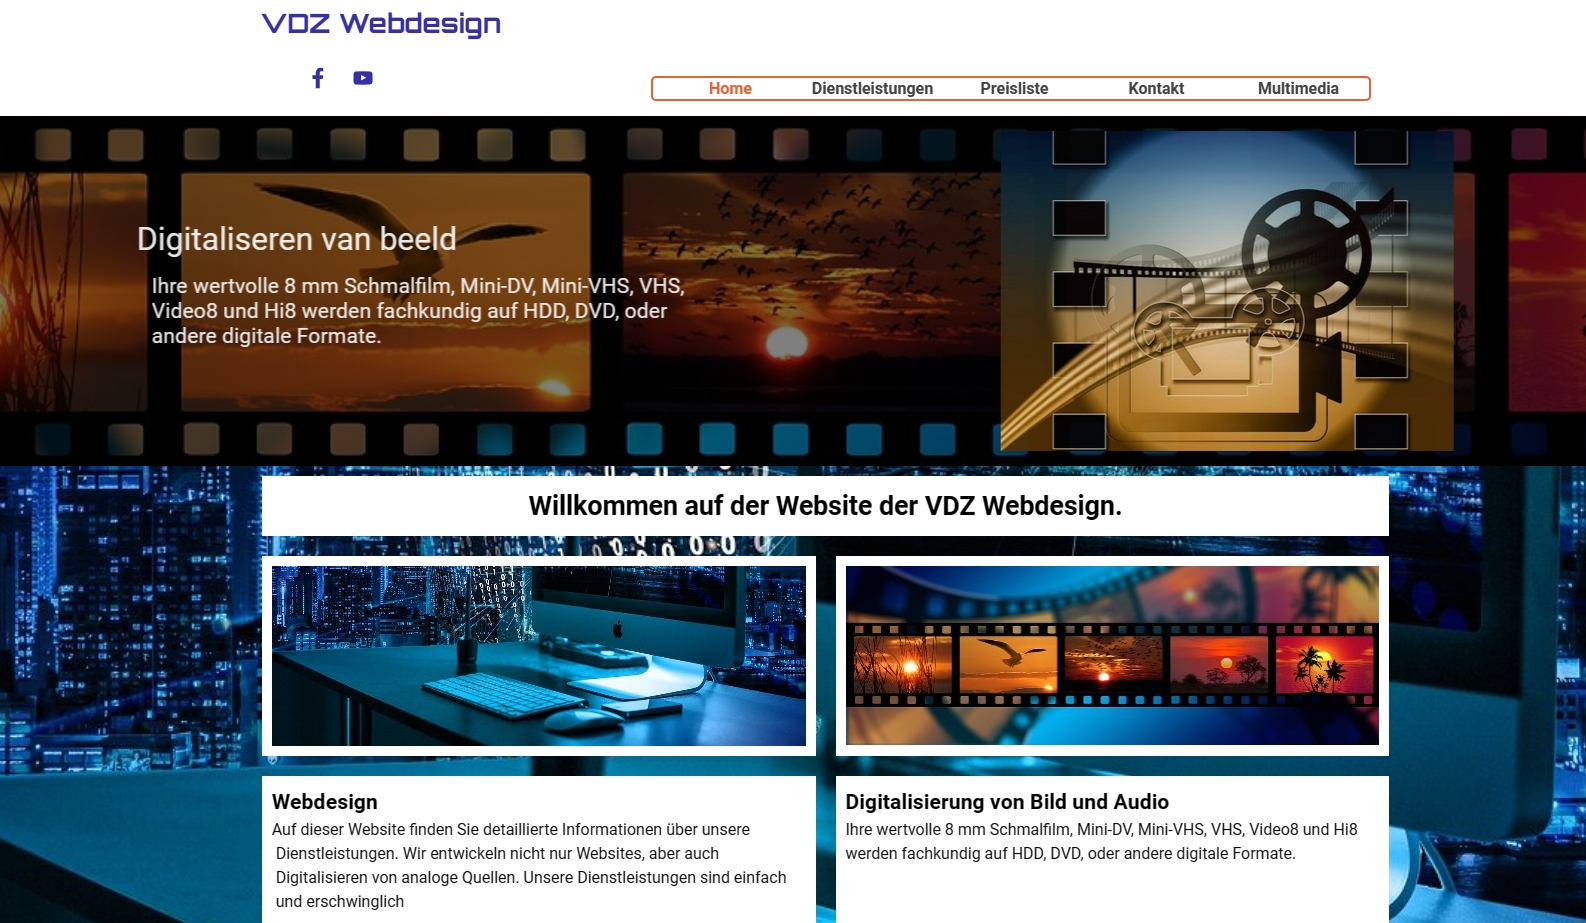 (c) Vdzwebdesign.com